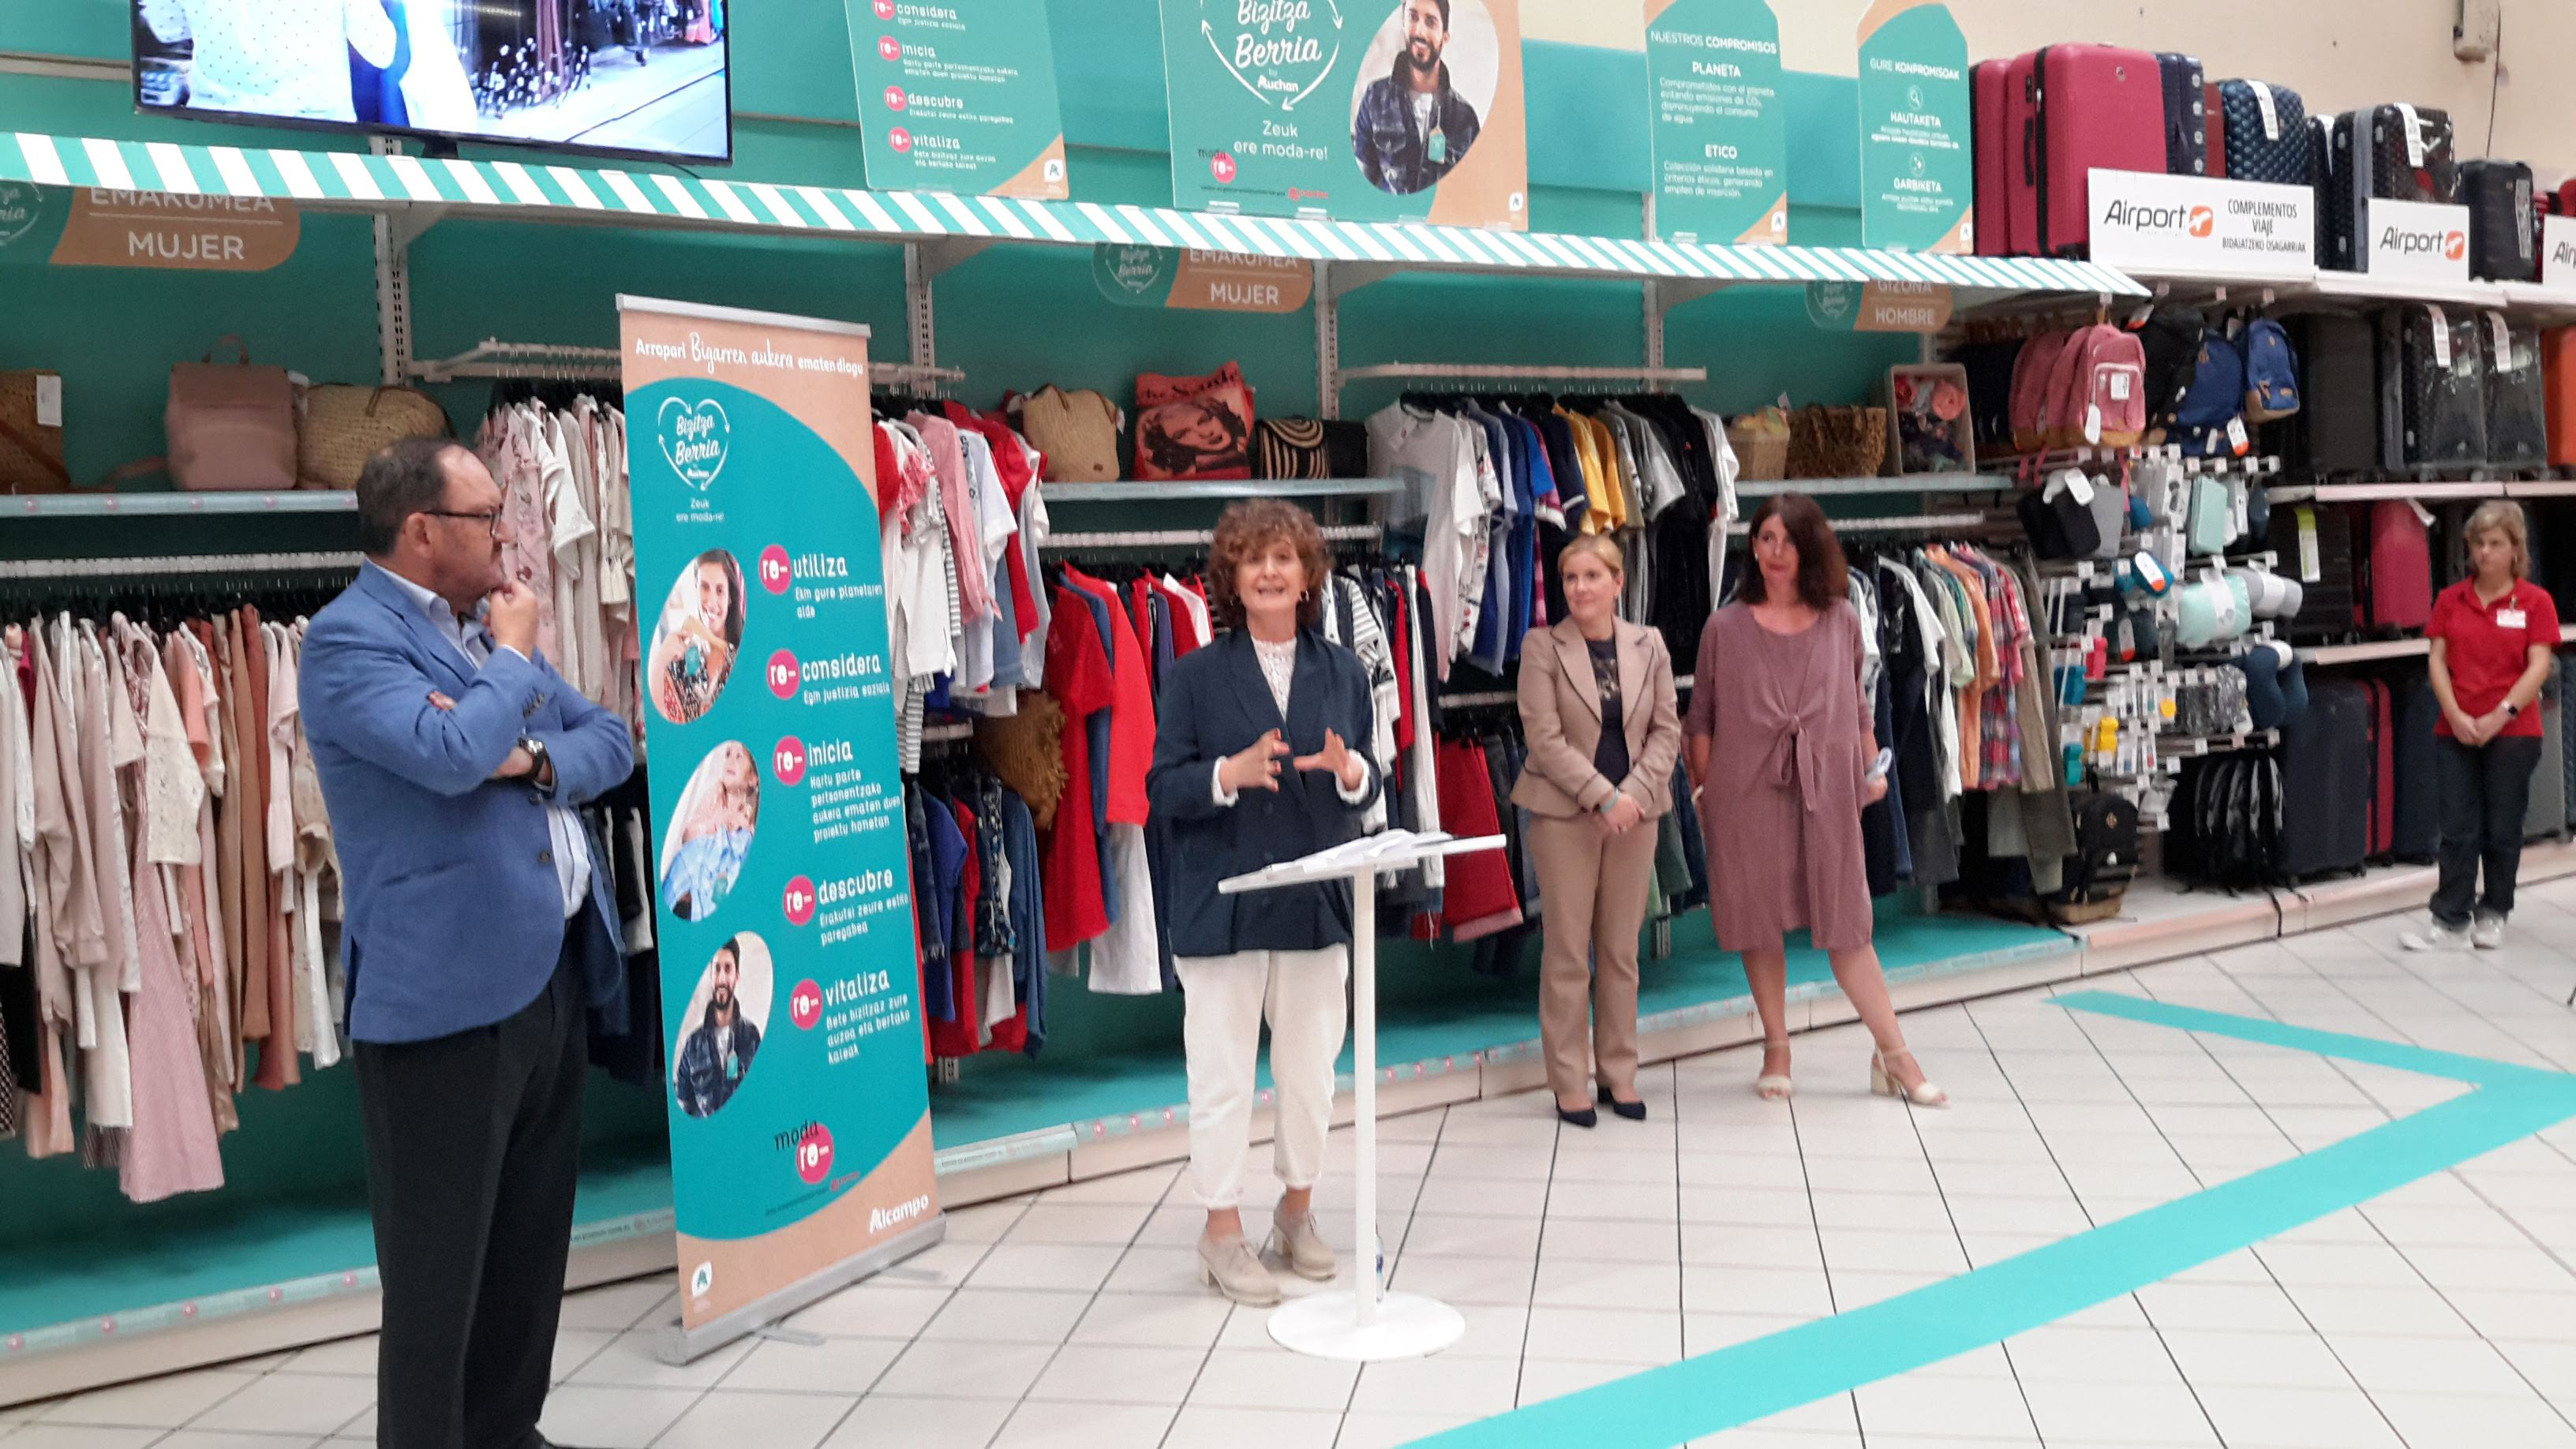 Baya Faial Reanimar Alcampo y Moda re- impulsan el primer córner de ropa usada en un  hipermercado en Euskadi